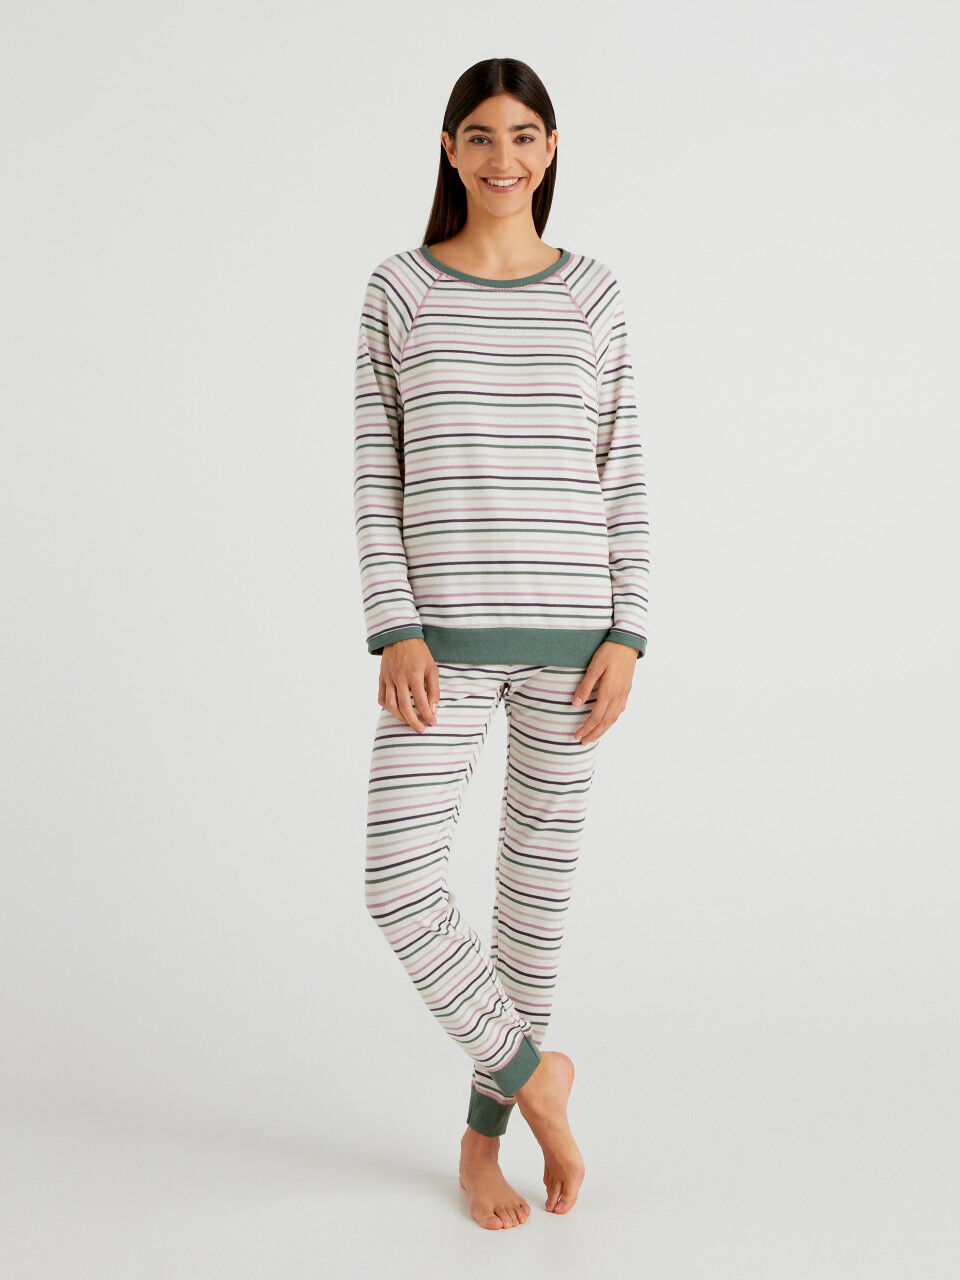 Warm striped pyjamas